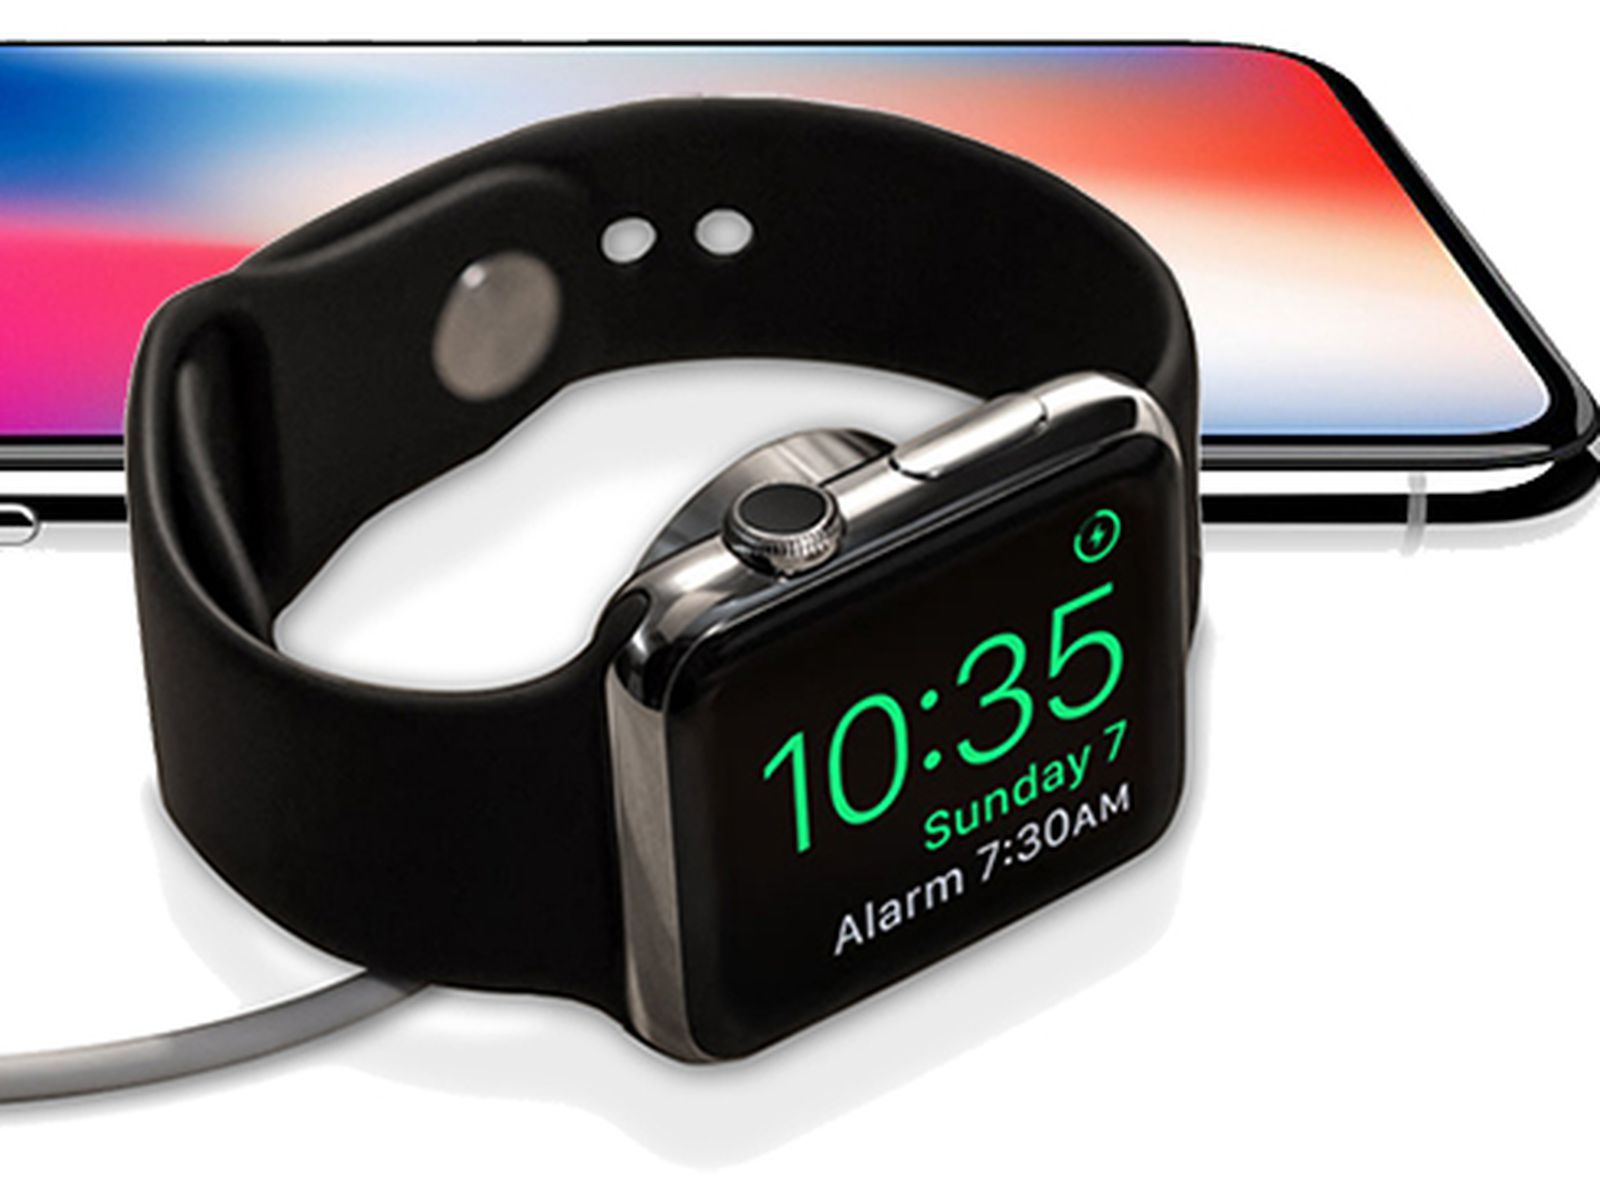 Будильник на apple watch. Ночной режим эпл вотч. Умный будильник для айфона. Вибробраслет будильник Apple watch.